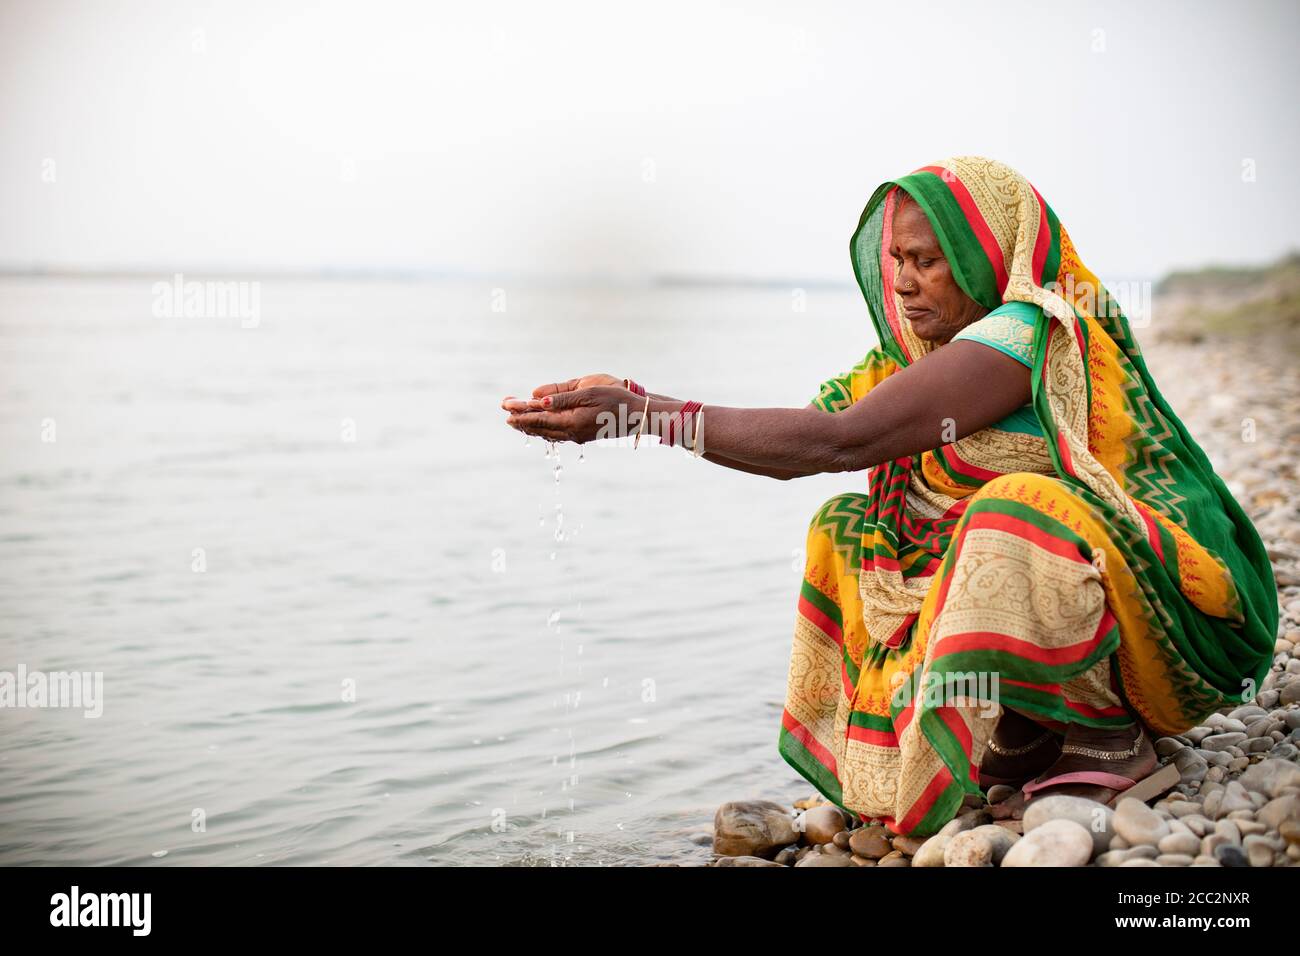 Une femme prie le long des rives de la rivière Gandak à Bihar, en Inde. Les hindous prient souvent sur les berges et les rives, car l'eau est considérée comme sainte. Banque D'Images